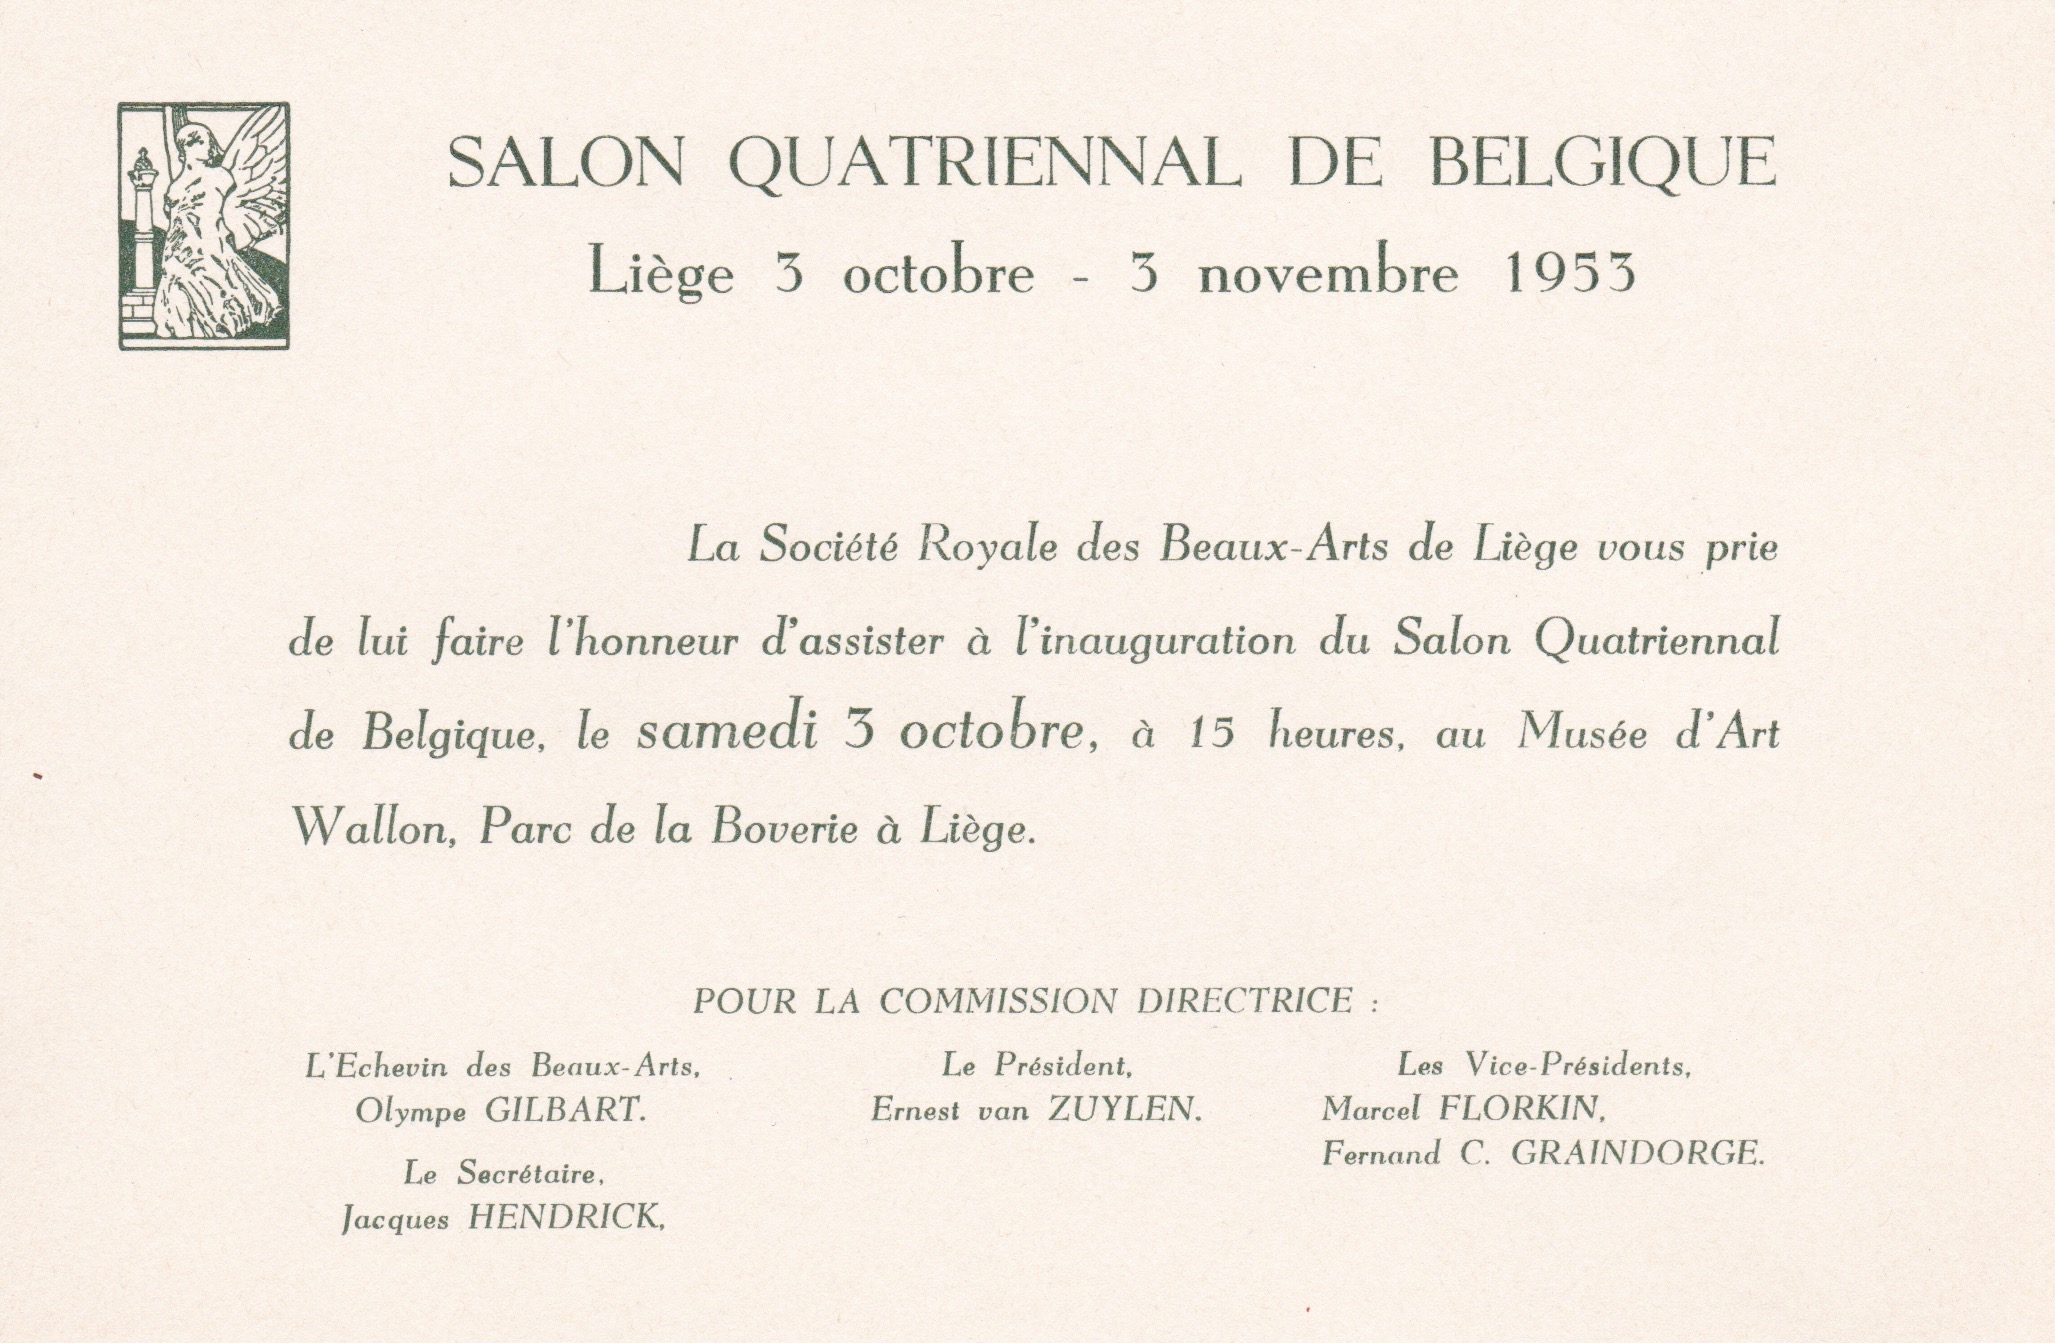 Salon quatriennal de belgique, 1953